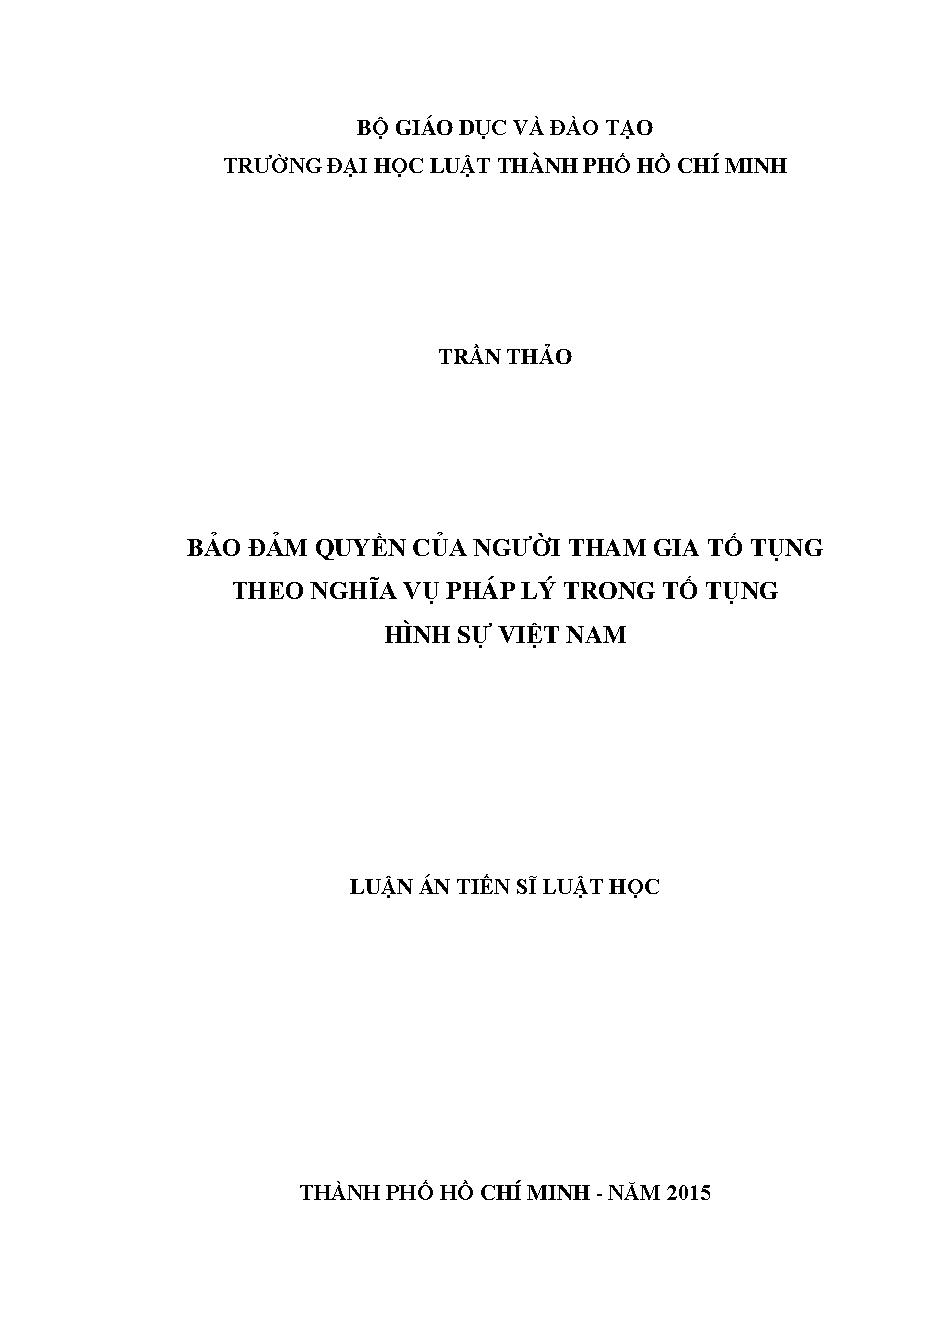 Bảo đảm quyền của người tham gia tố tụng theo nghĩa vụ pháp lý trong tố tụng hình sự Việt Nam